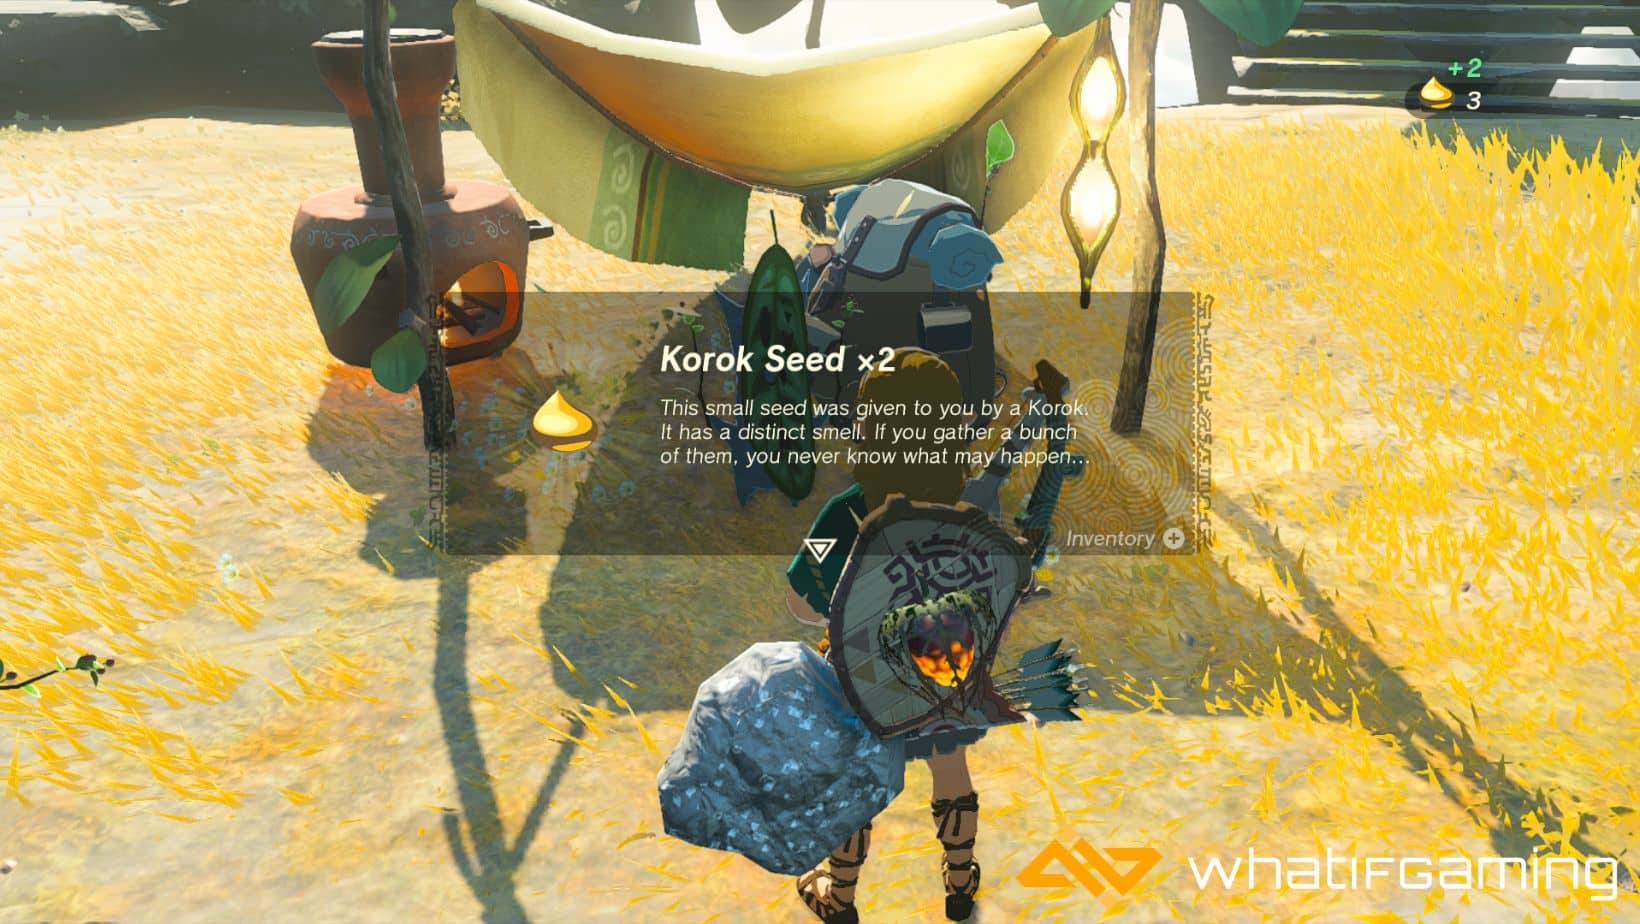 The Korok Seed